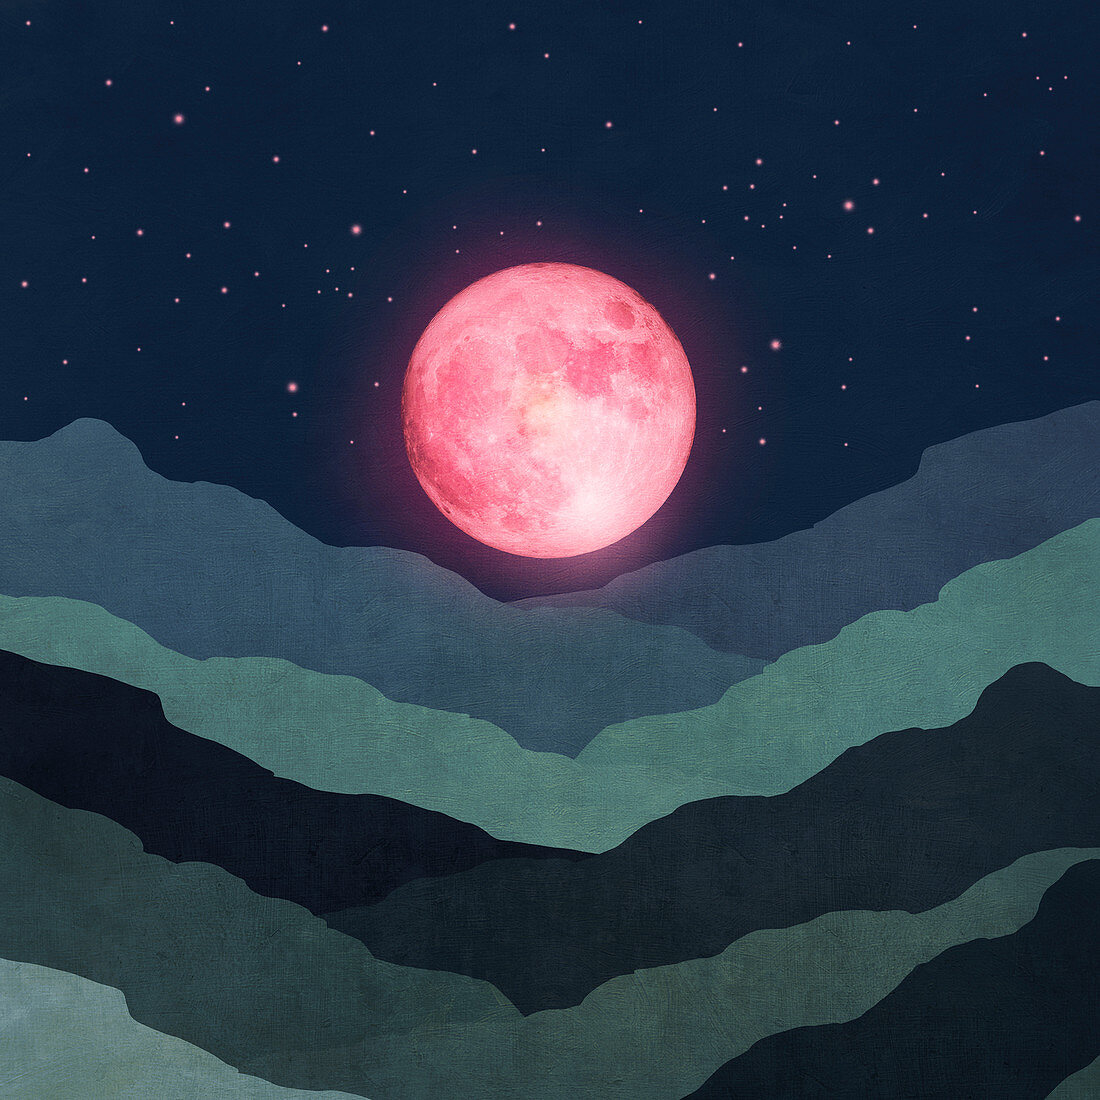 Pink moon above landscape, illustration